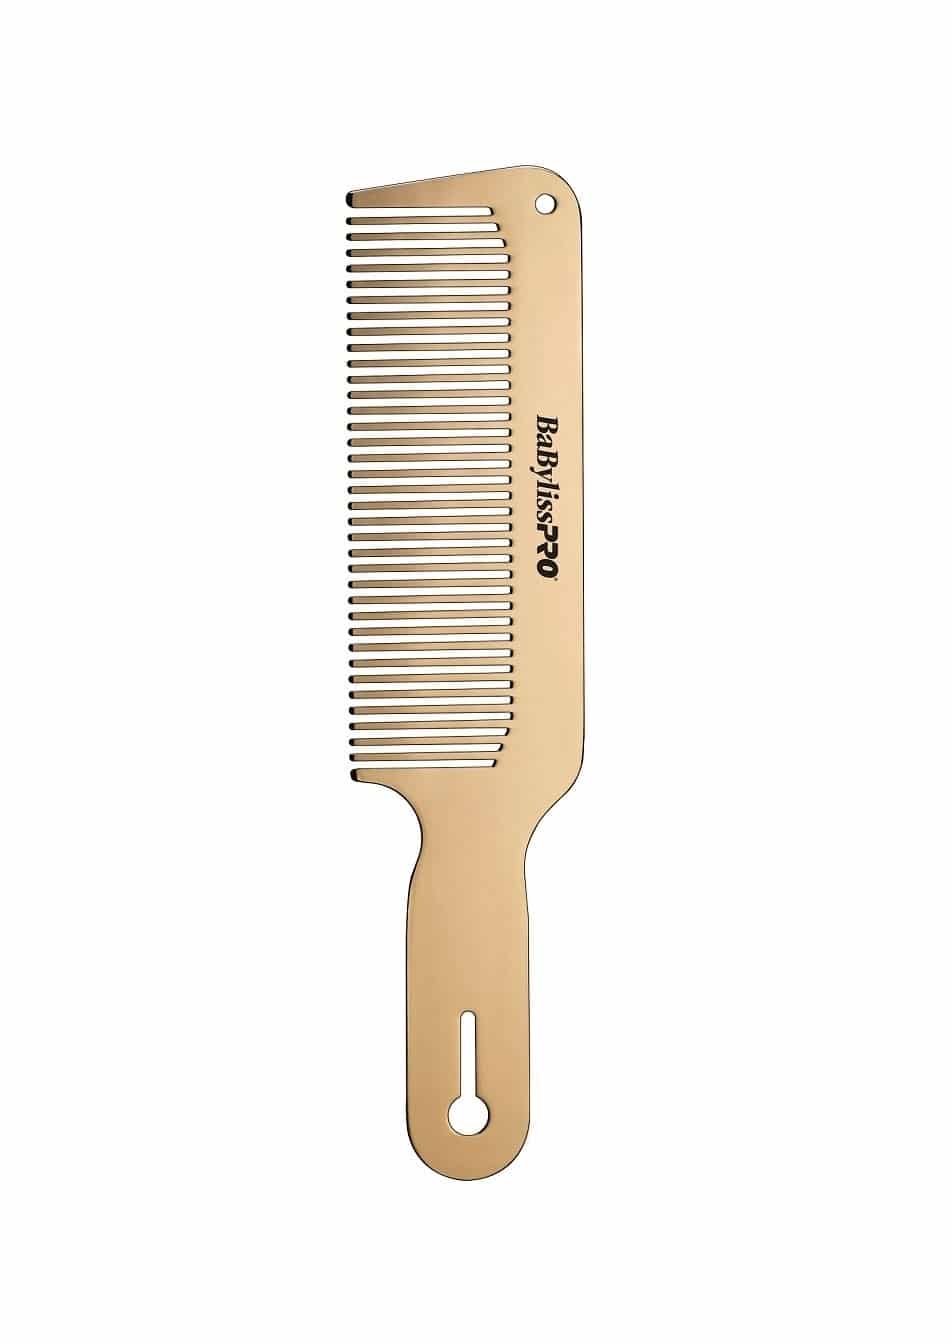 remington salon collection hair clipper